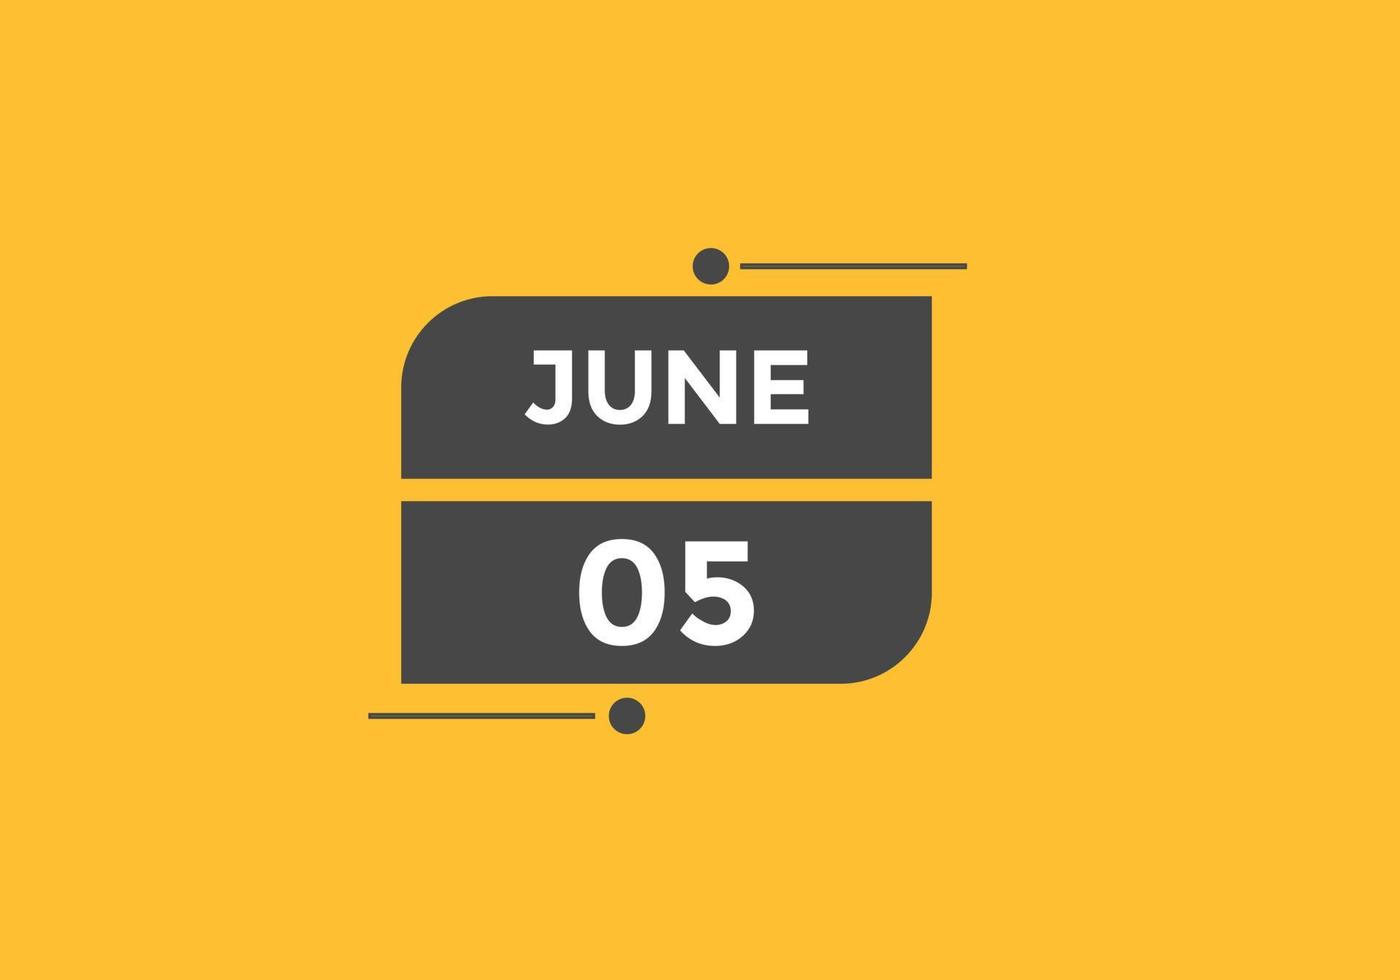 lembrete de calendário de 5 de junho. 5 de junho modelo de ícone de calendário diário. modelo de design de ícone de calendário 5 de junho. ilustração vetorial vetor